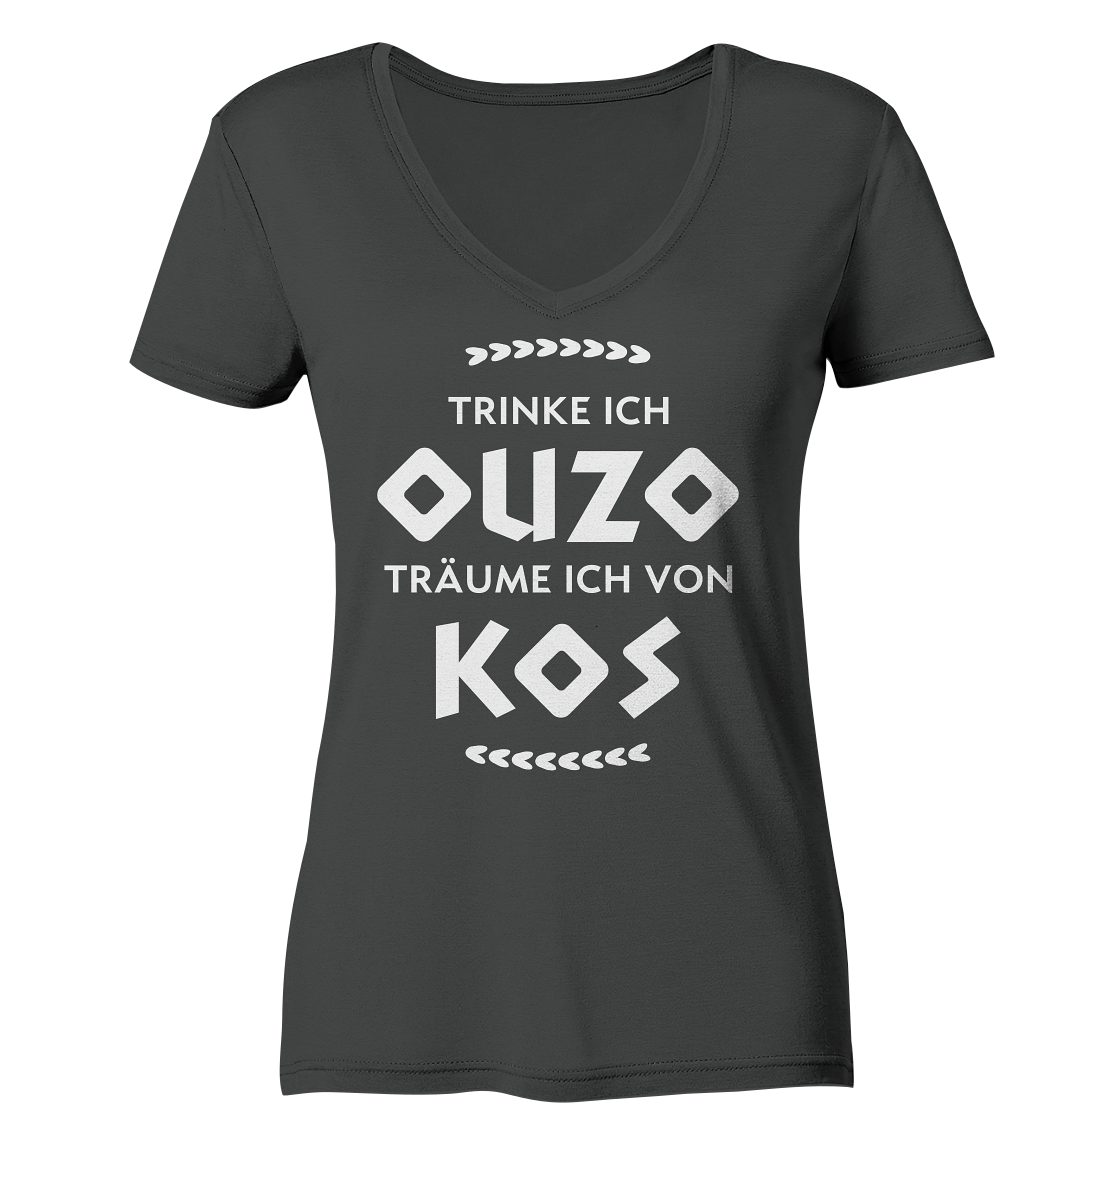 Trinke ich Ouzo träume ich von Kos - Ladies Organic V-Neck Shirt